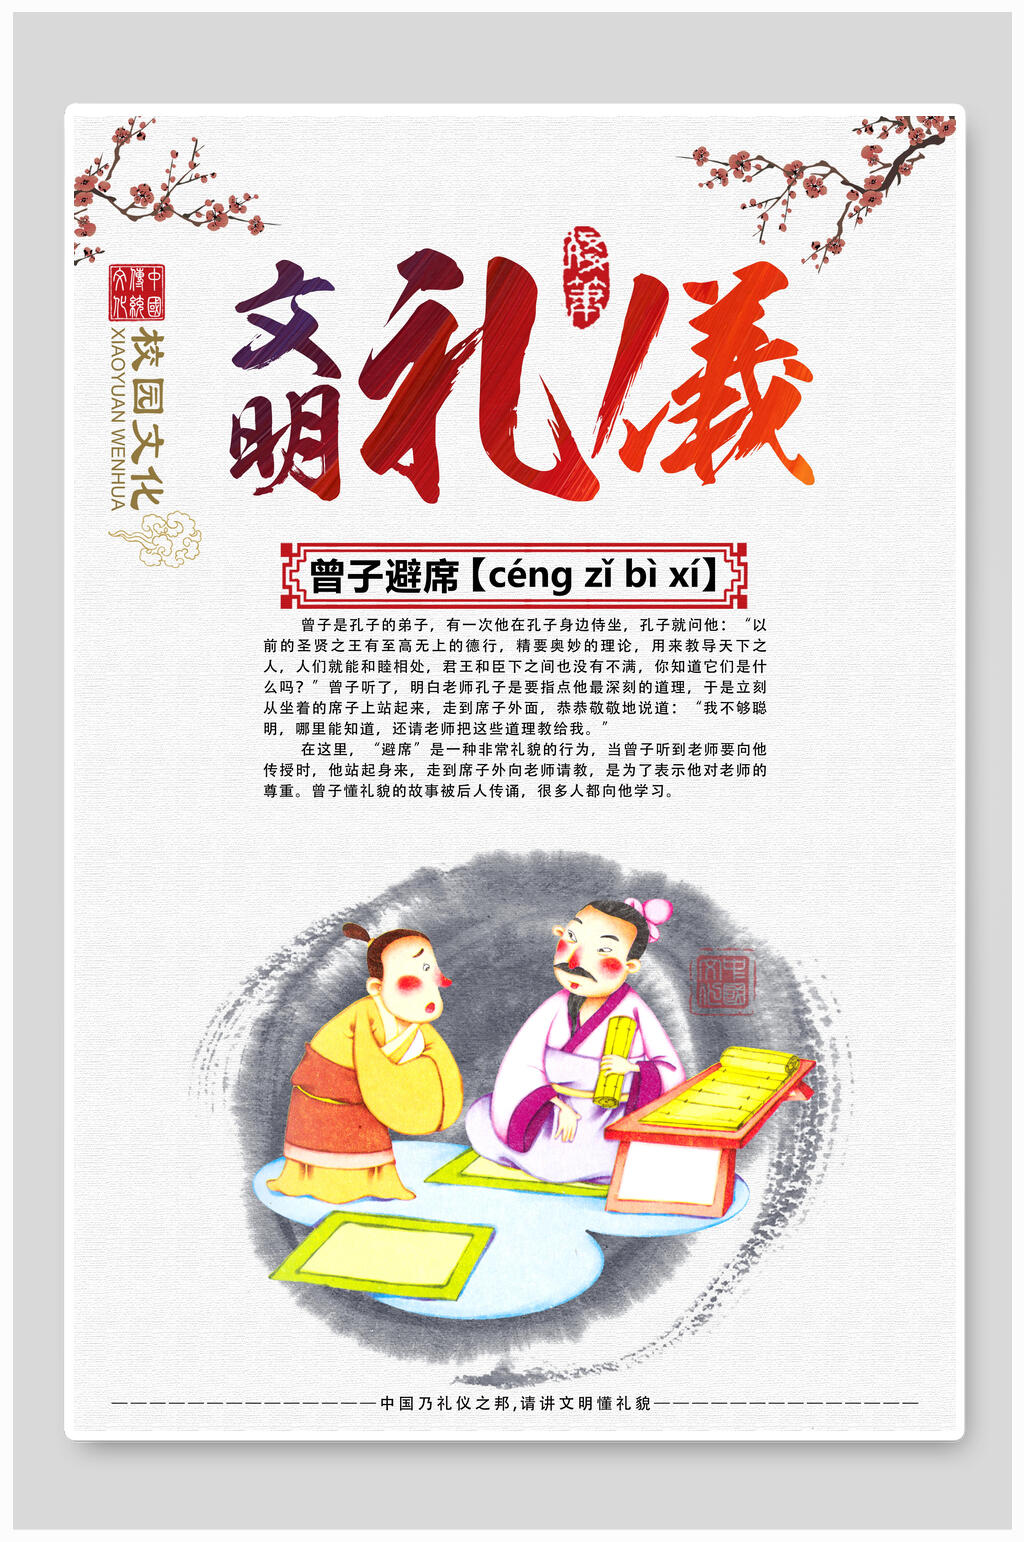 文明礼仪国学文化中华传统文化宣传海报